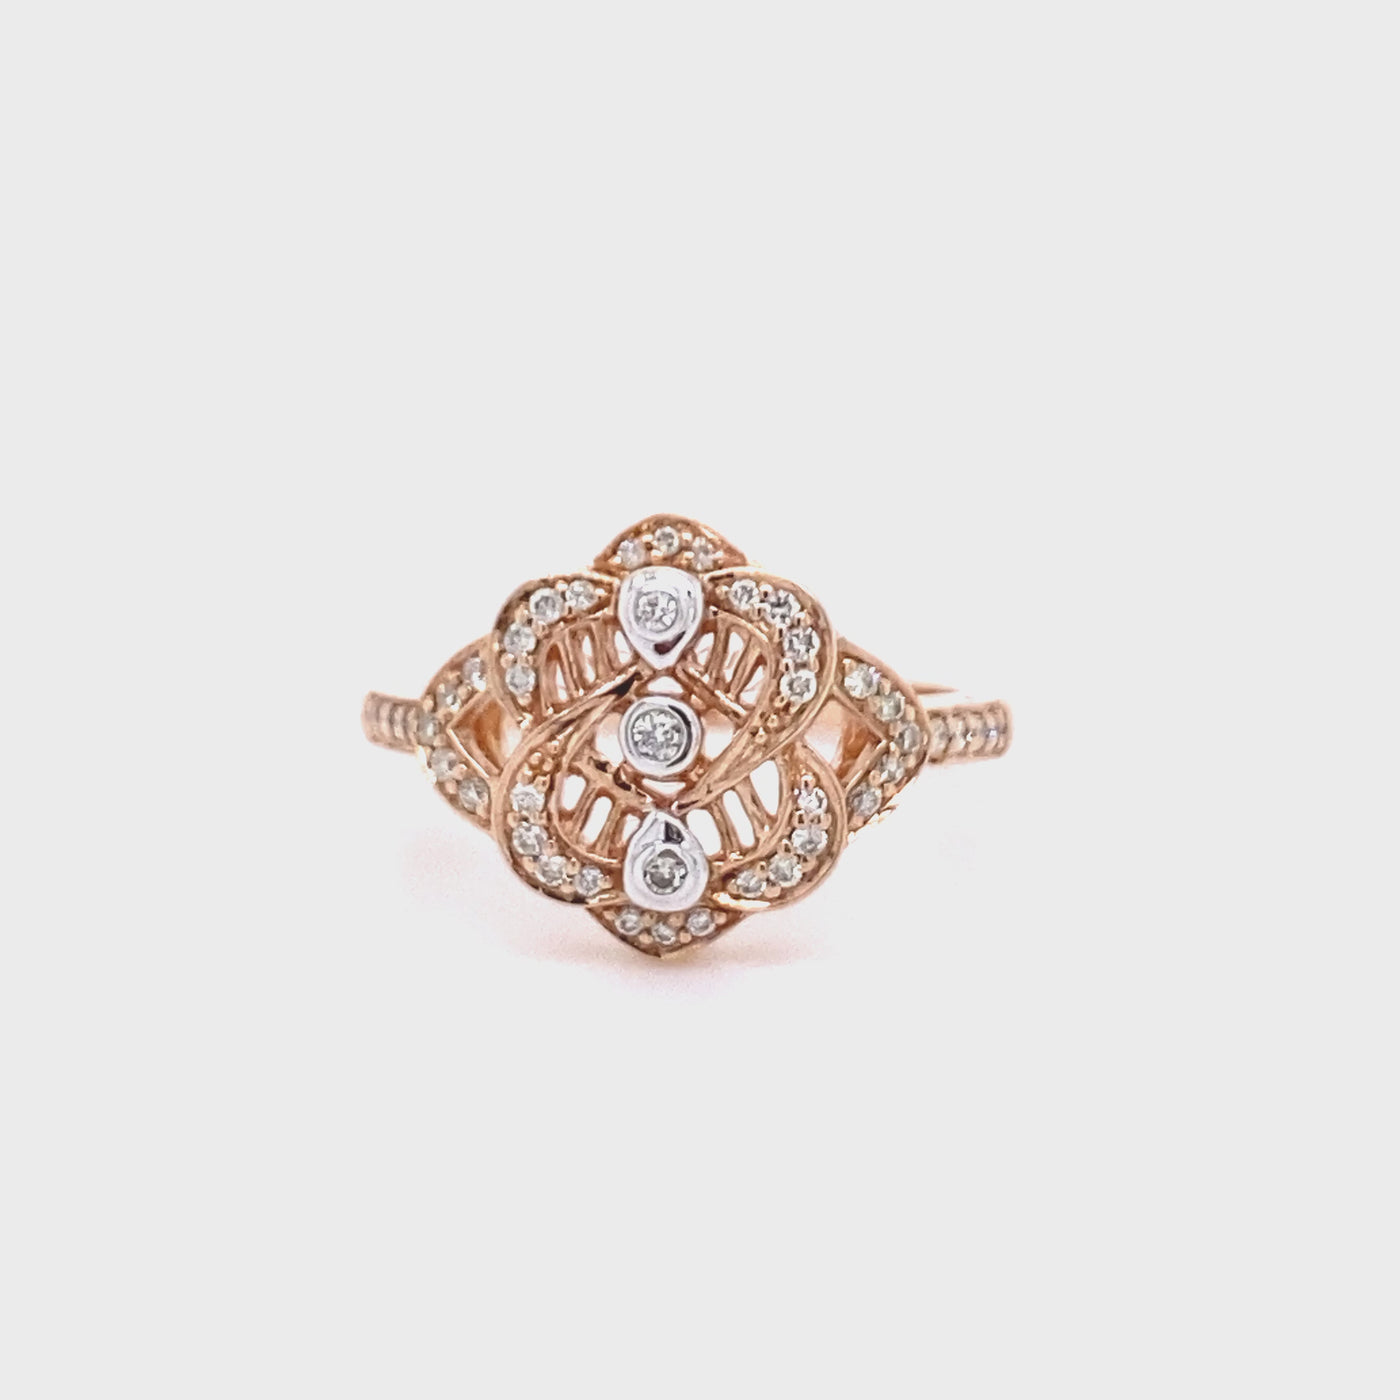 9ct Rose Gold Diamond Filigree Ring